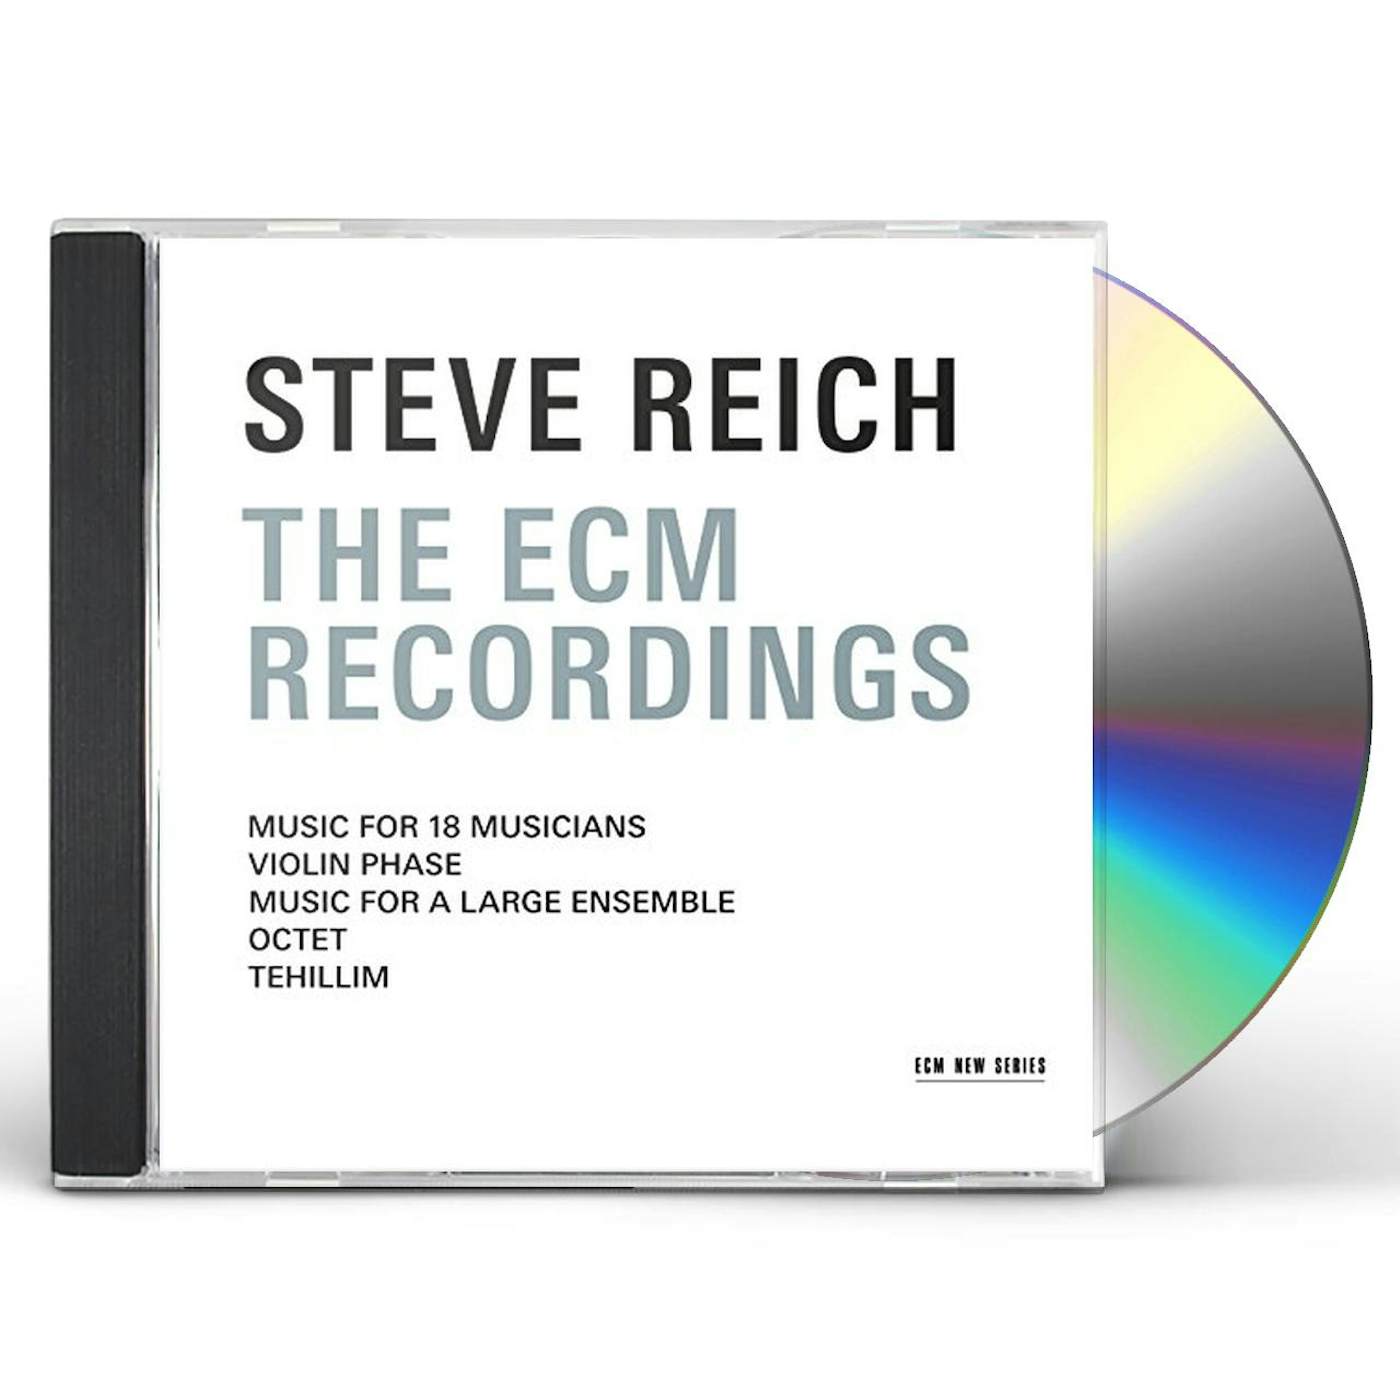 STEVE REICH - THE ECM RECORDINGS CD